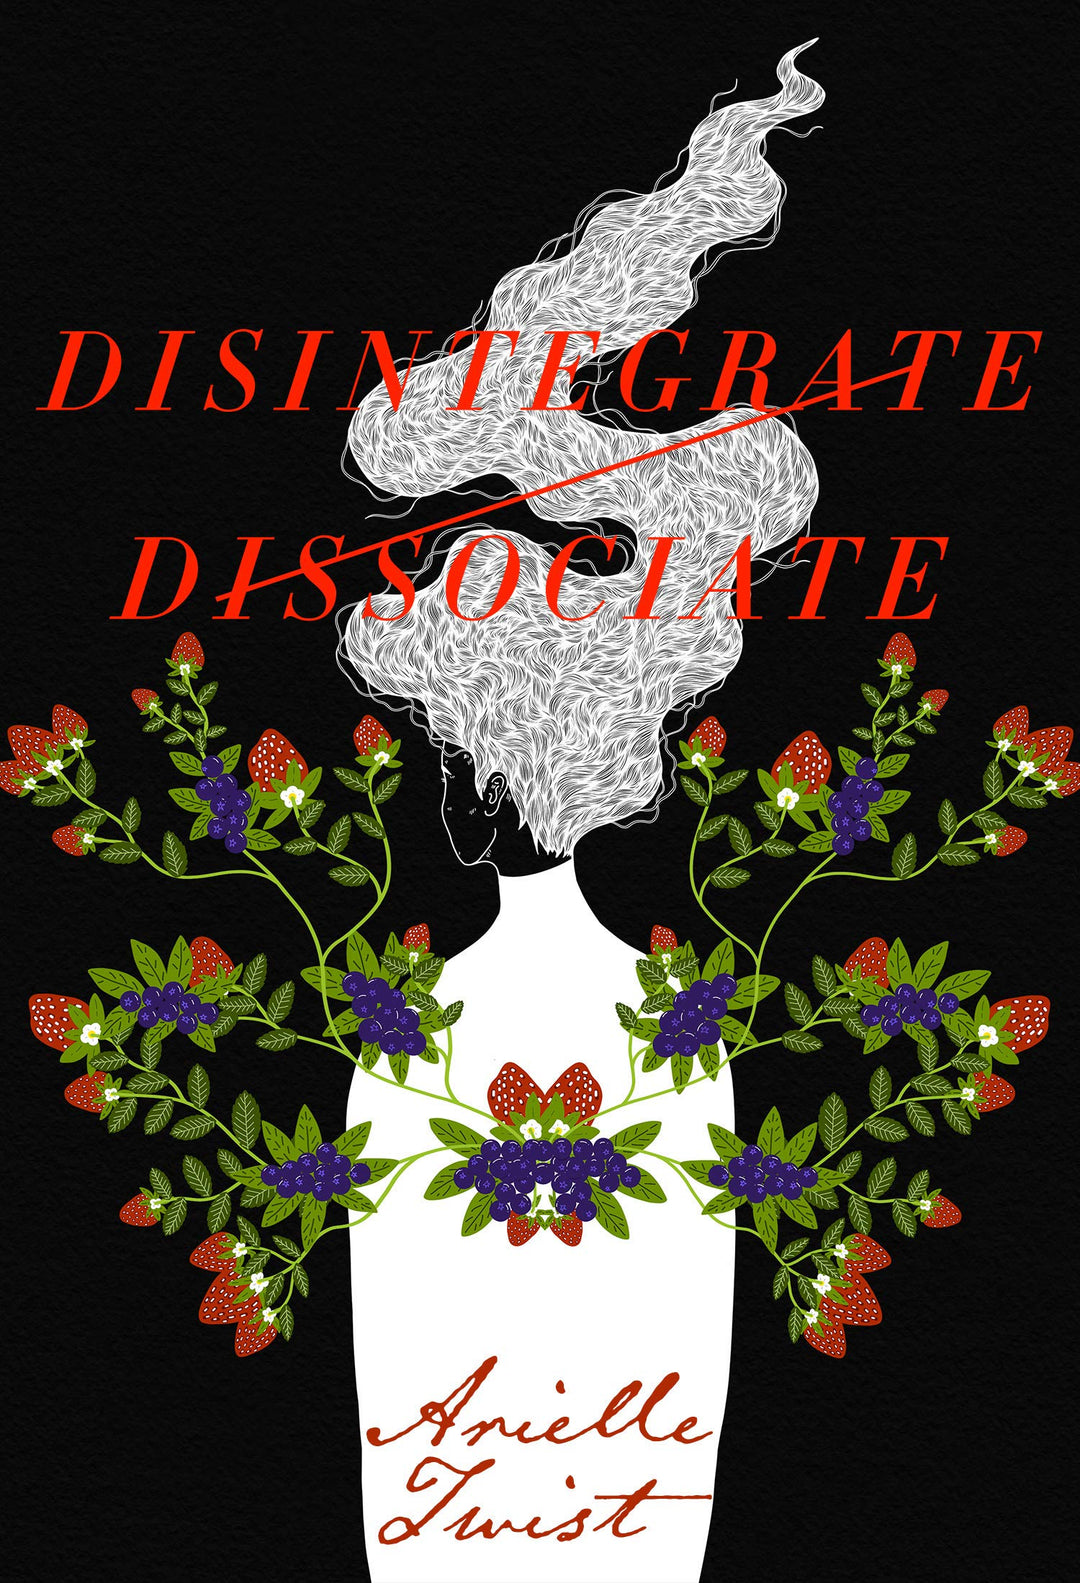 Disintegrate/Dissociate by Arielle Twist